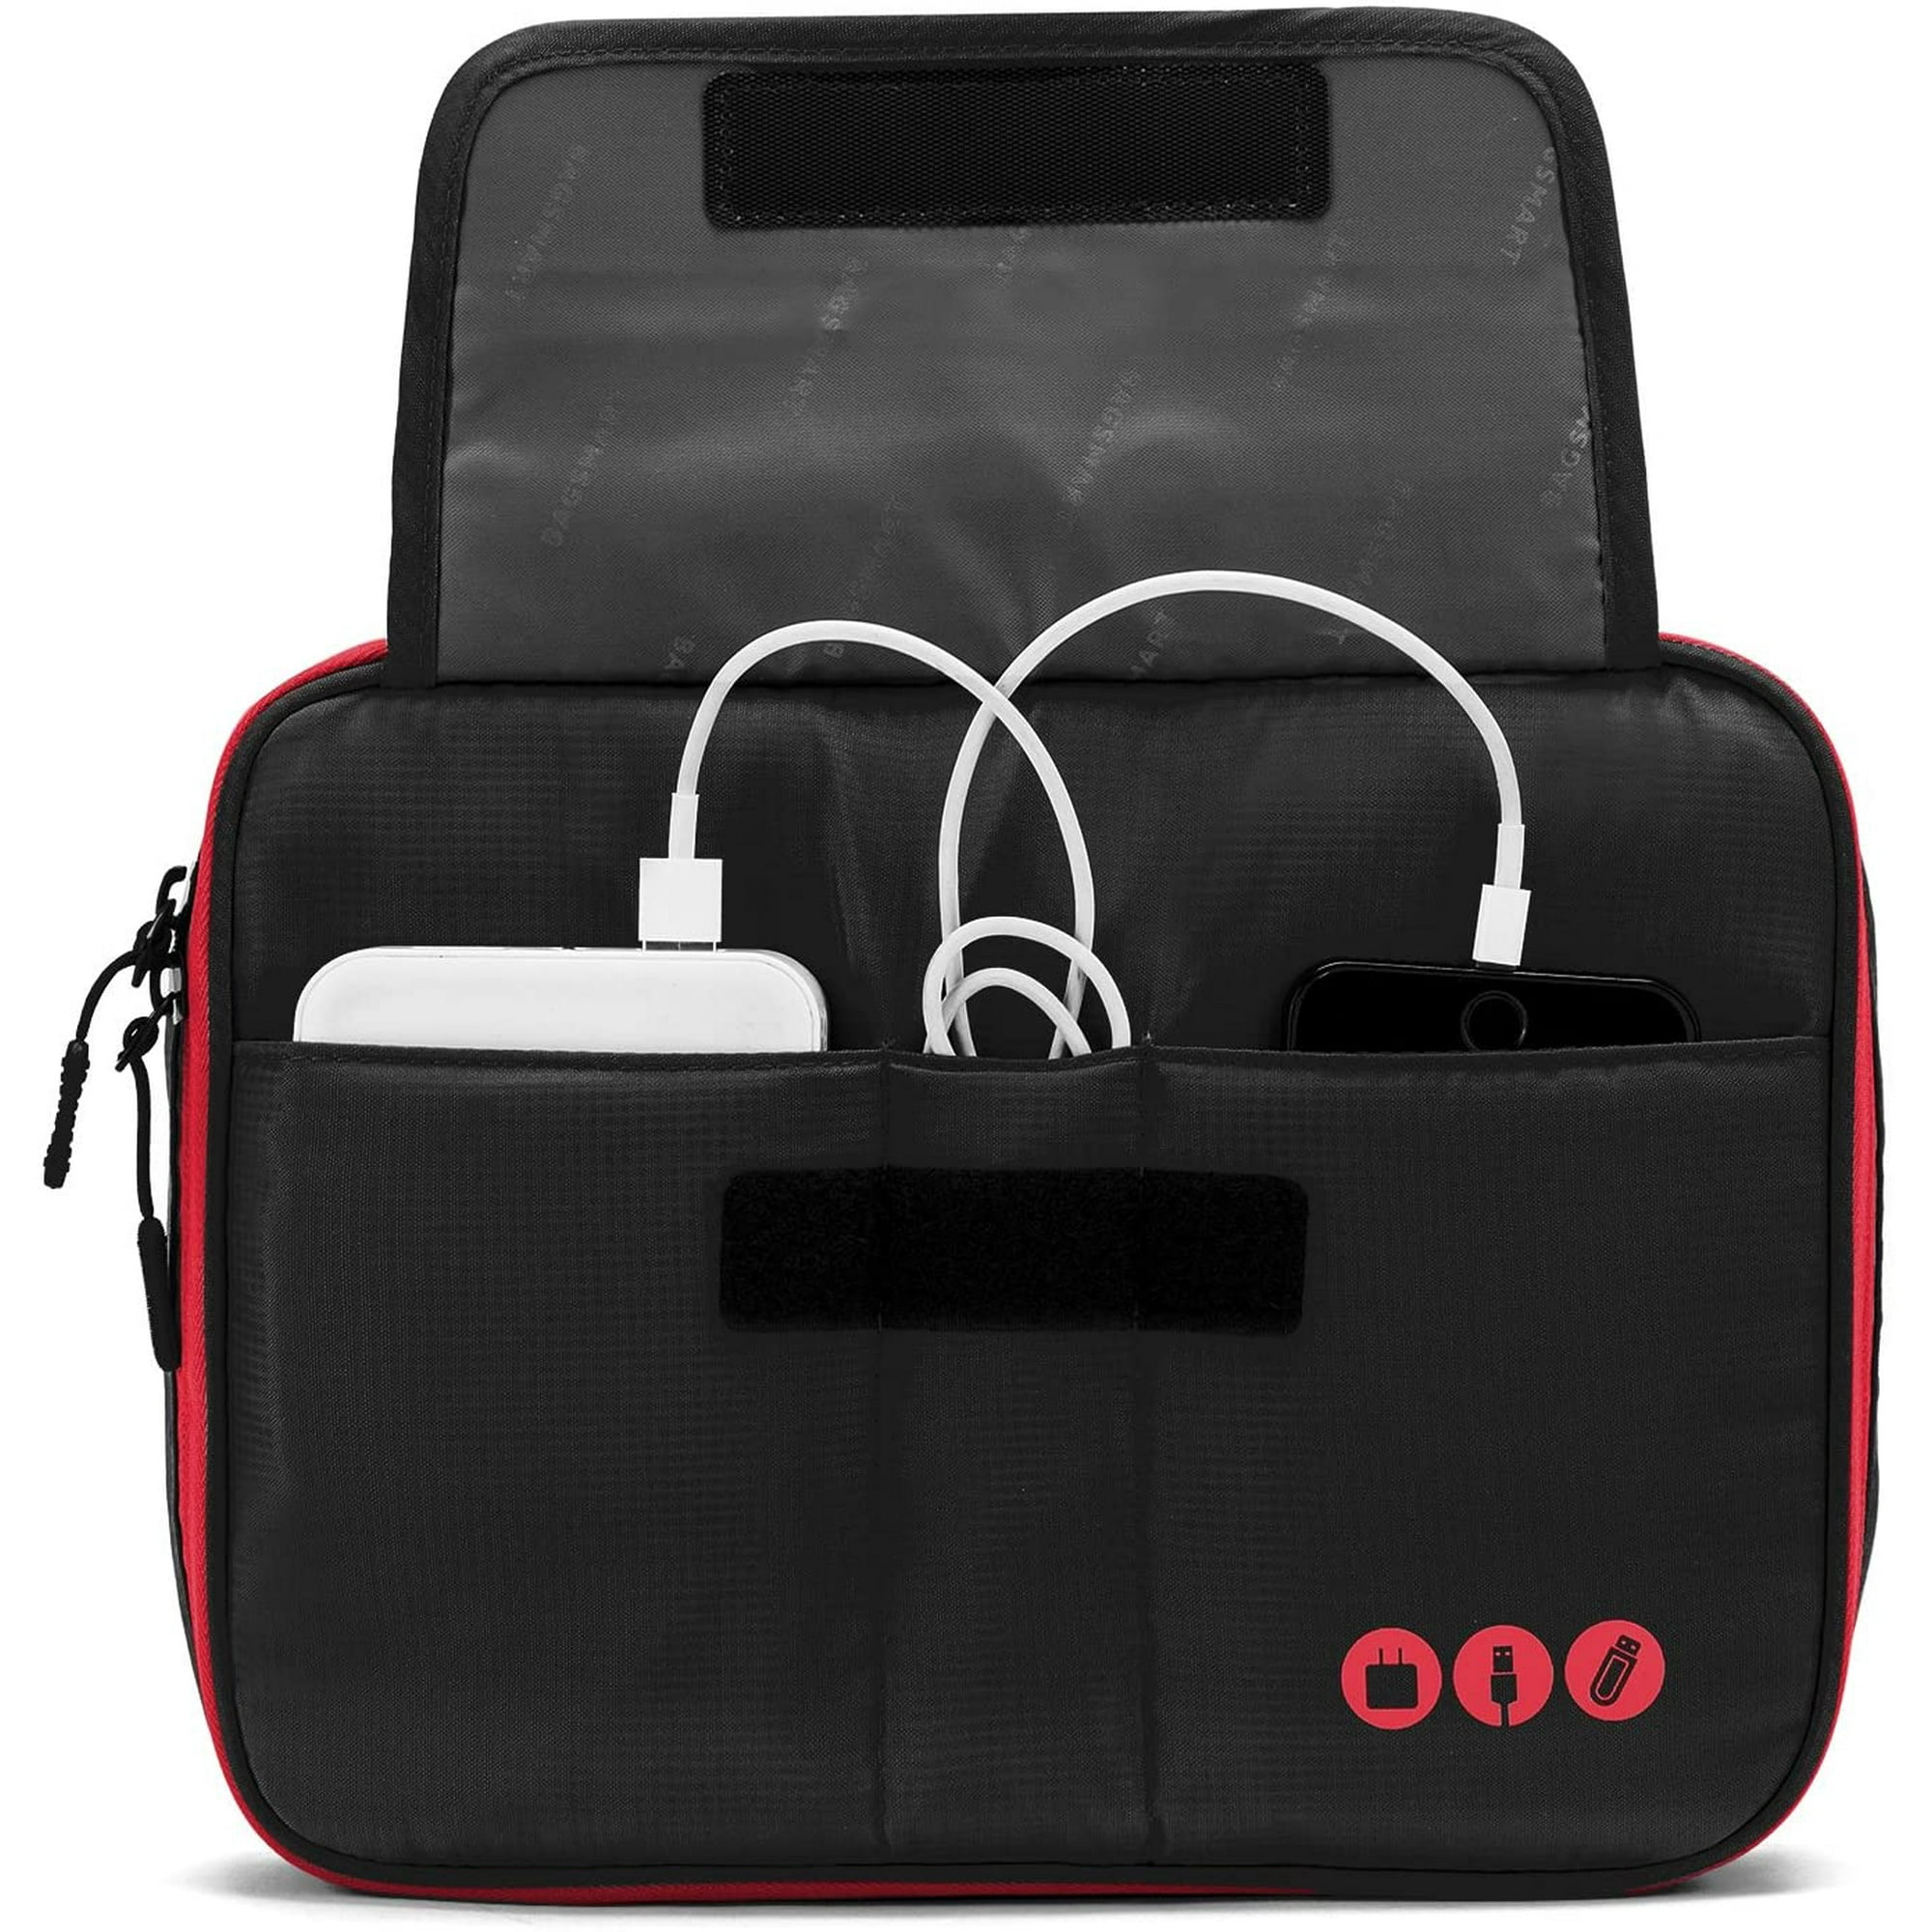 Organizador universal de cables de viaje, accesorios electrónicos, bolsa de  transporte para iPad de 9,7 pulgadas, Kindle, adaptador de corriente, negro  y rojo Adepaton CZDZ-ST175-2